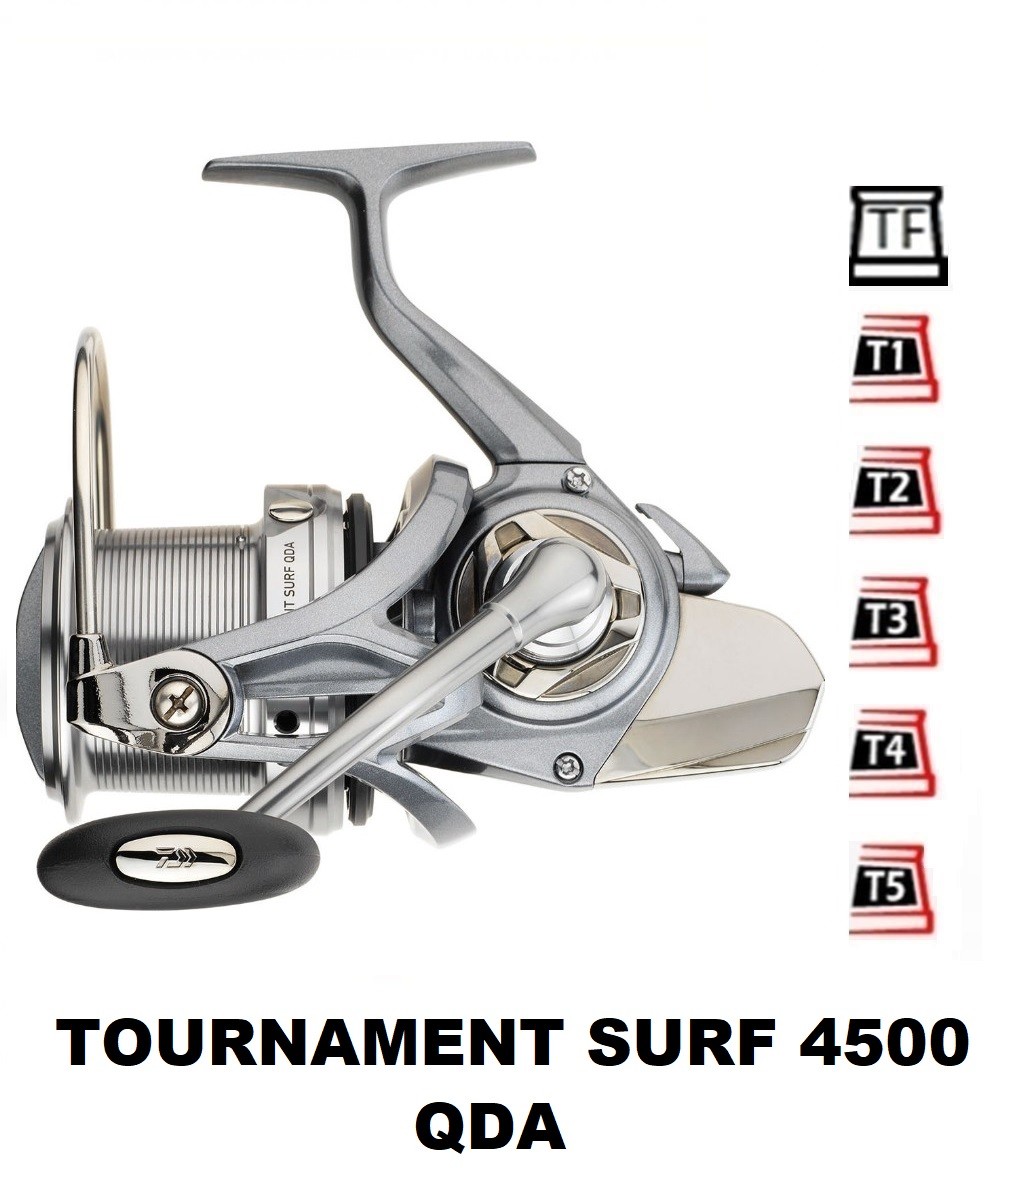 Bobines Tournament Surf 4500 QDA